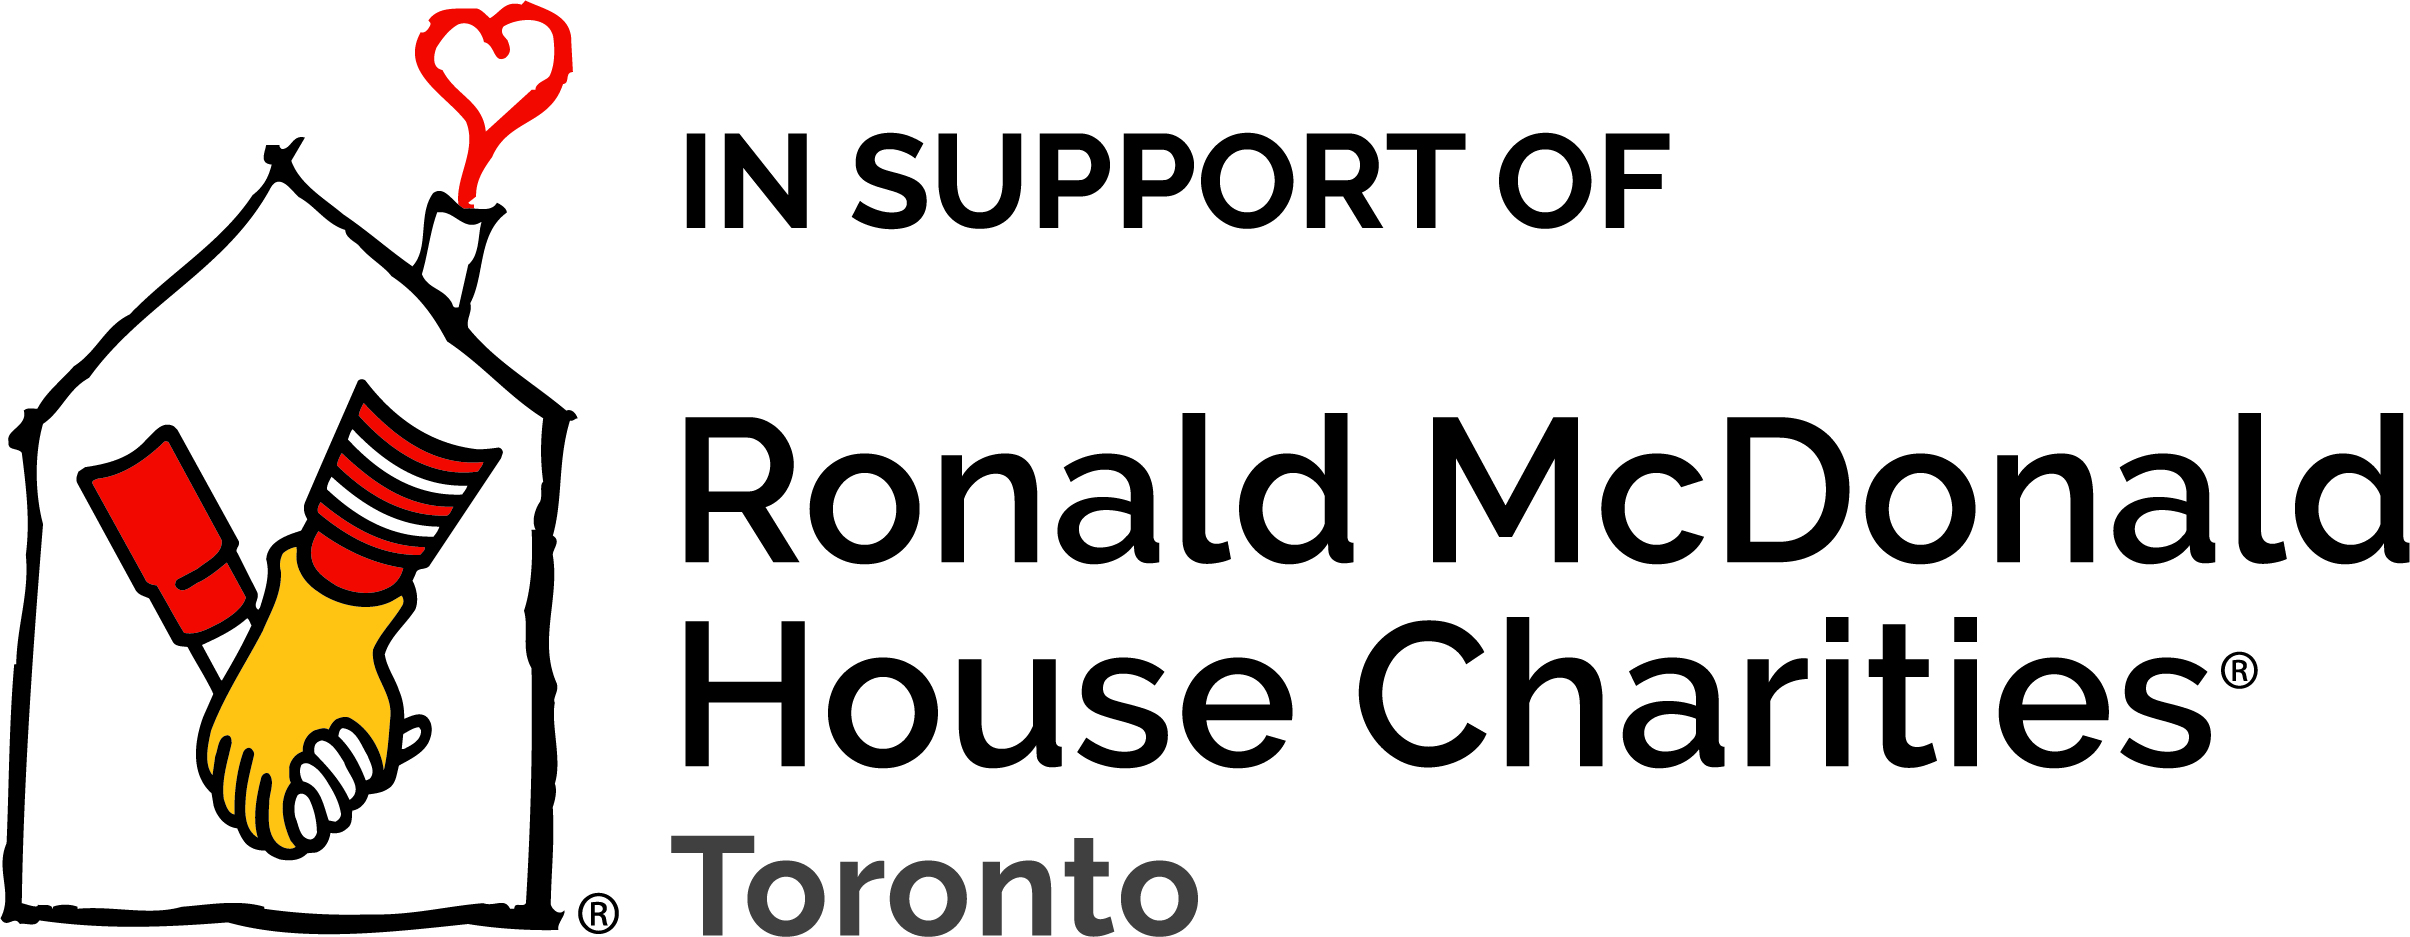 Manoirs Ronald McDonald